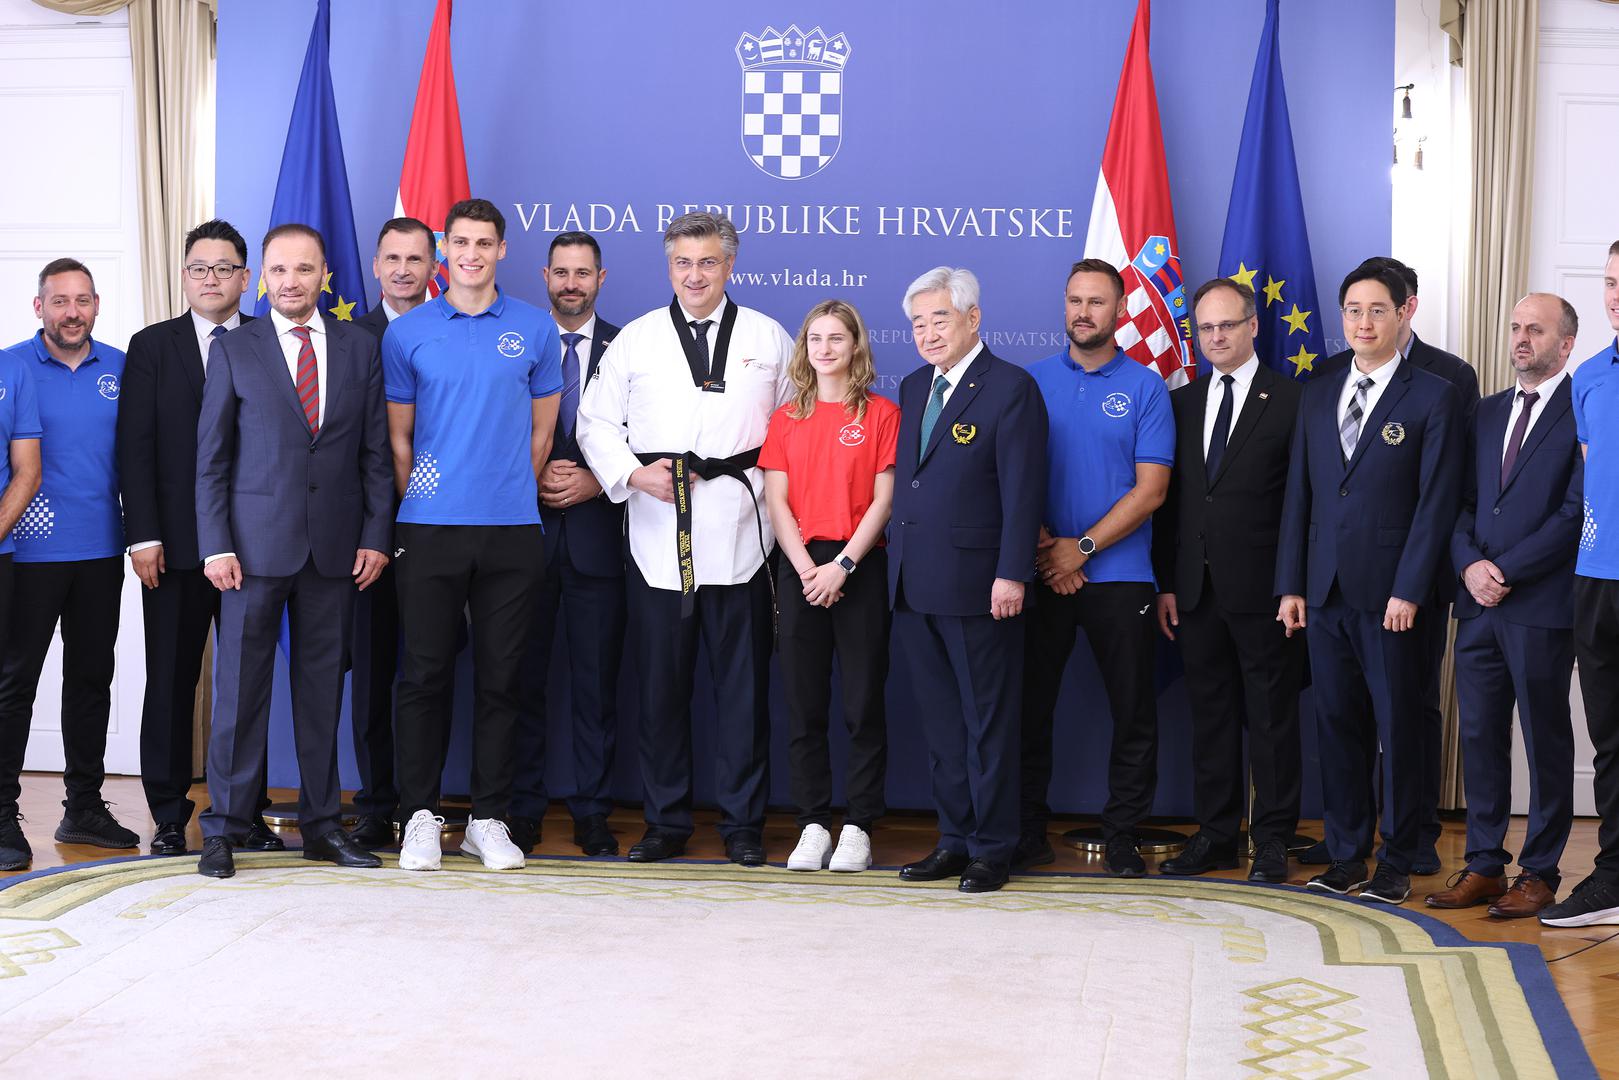 Plenković je reprezentaciji čestitao na sedam odličja na Europskom prvenstvu te poručio da im je iznimno drago što Savez ima kontinuitet uspjeha. Dodao je kako će Vlada Republike Hrvatske podupirati ovaj sport.